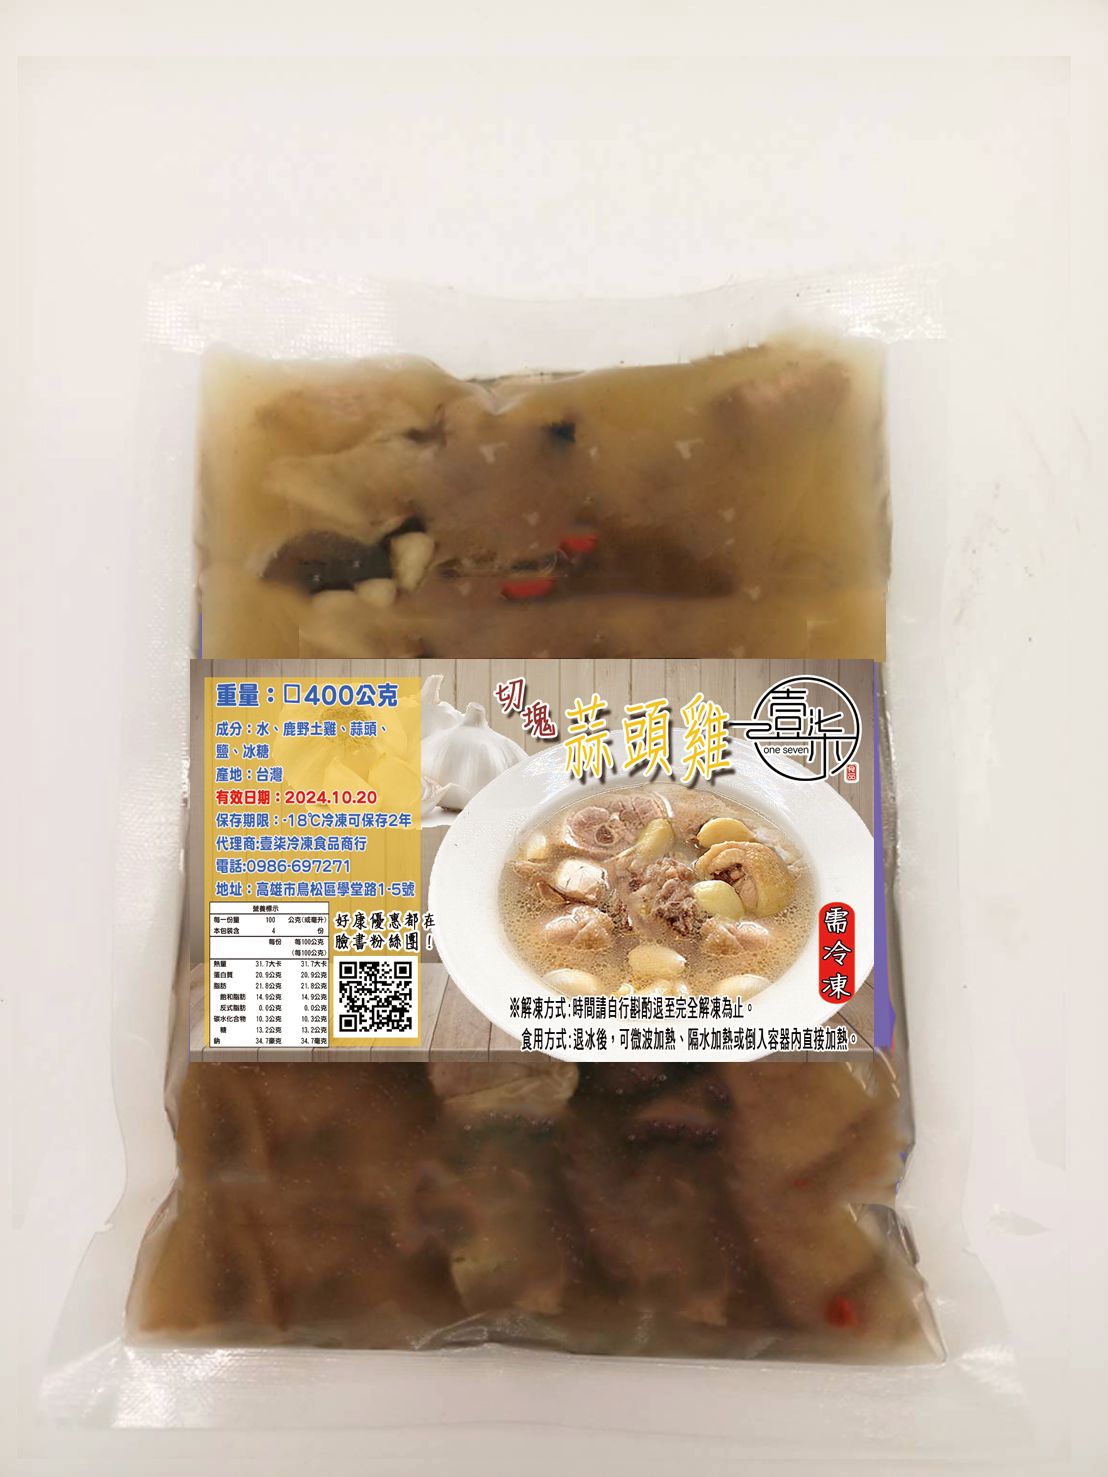 【517】台灣傳統補氣湯品任選400g(多款雞湯/藥燉排骨)